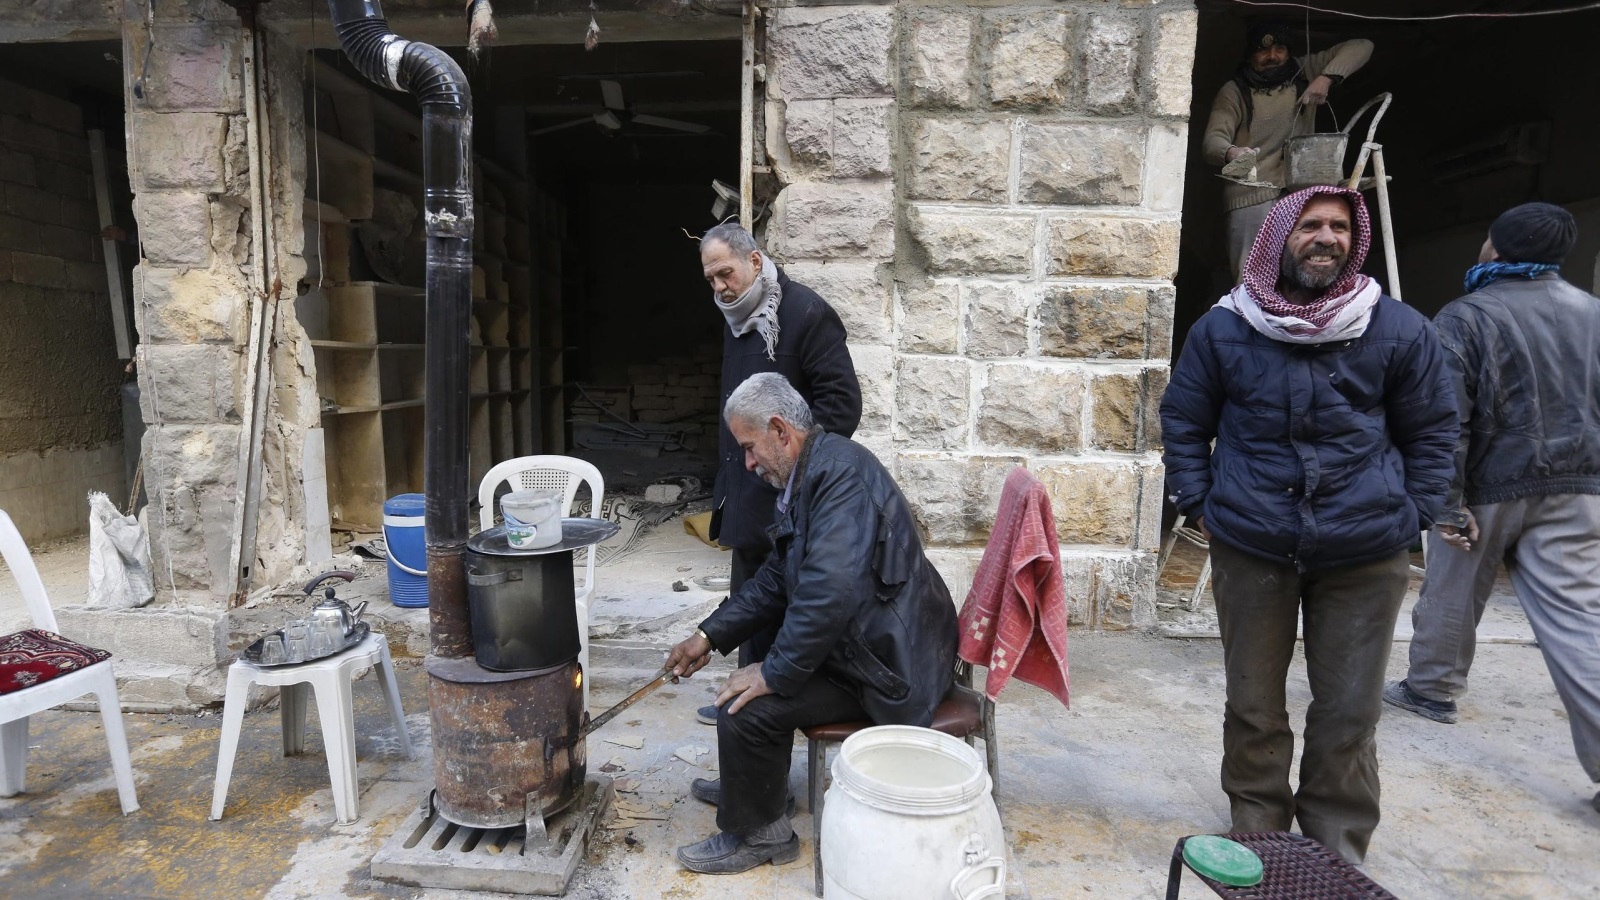 ‪حلبيون يحاولون التغلب على برد الشتاء بوسائل بدائية‬ حلبيون يحاولون التغلب على برد الشتاء بوسائل بدائية   (الأوروبية)